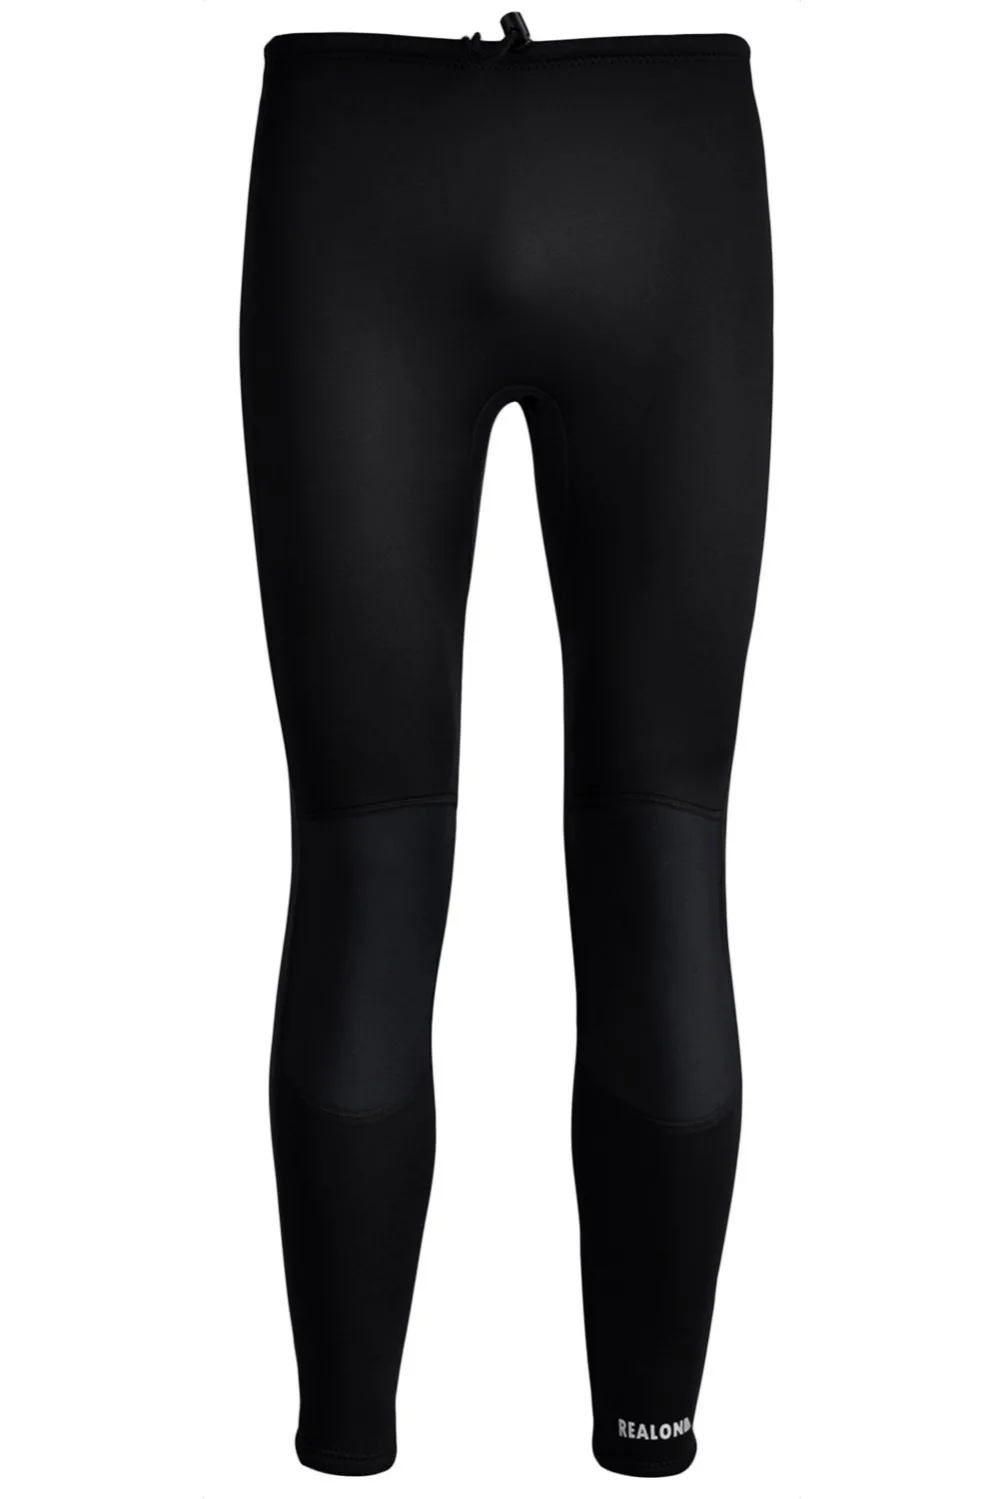 REALON 3 мм мужские/женские брюки от Гидрокостюма держать теплый неопреновый Шорты для плавания серфинг Сноркелинг купальник брюки штаны для дайвинга